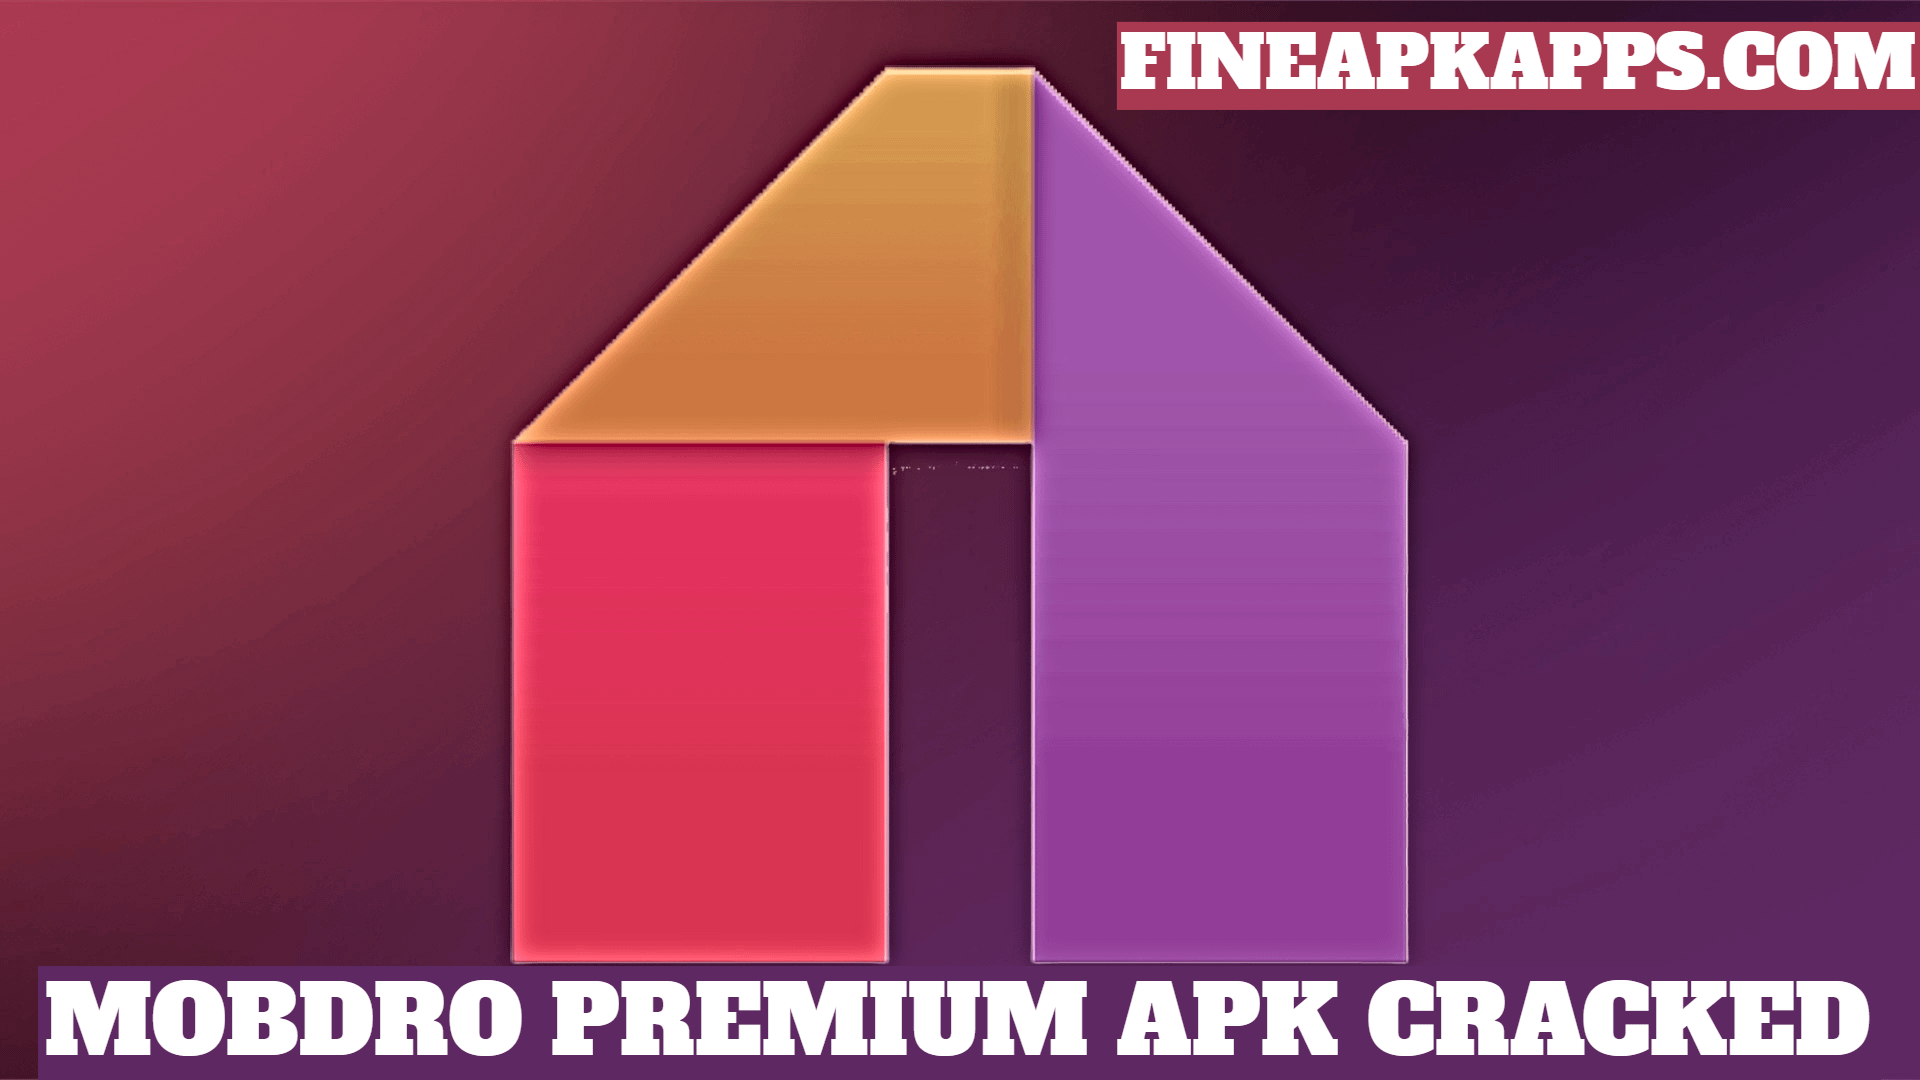 Mobdro Premium APK Cracked